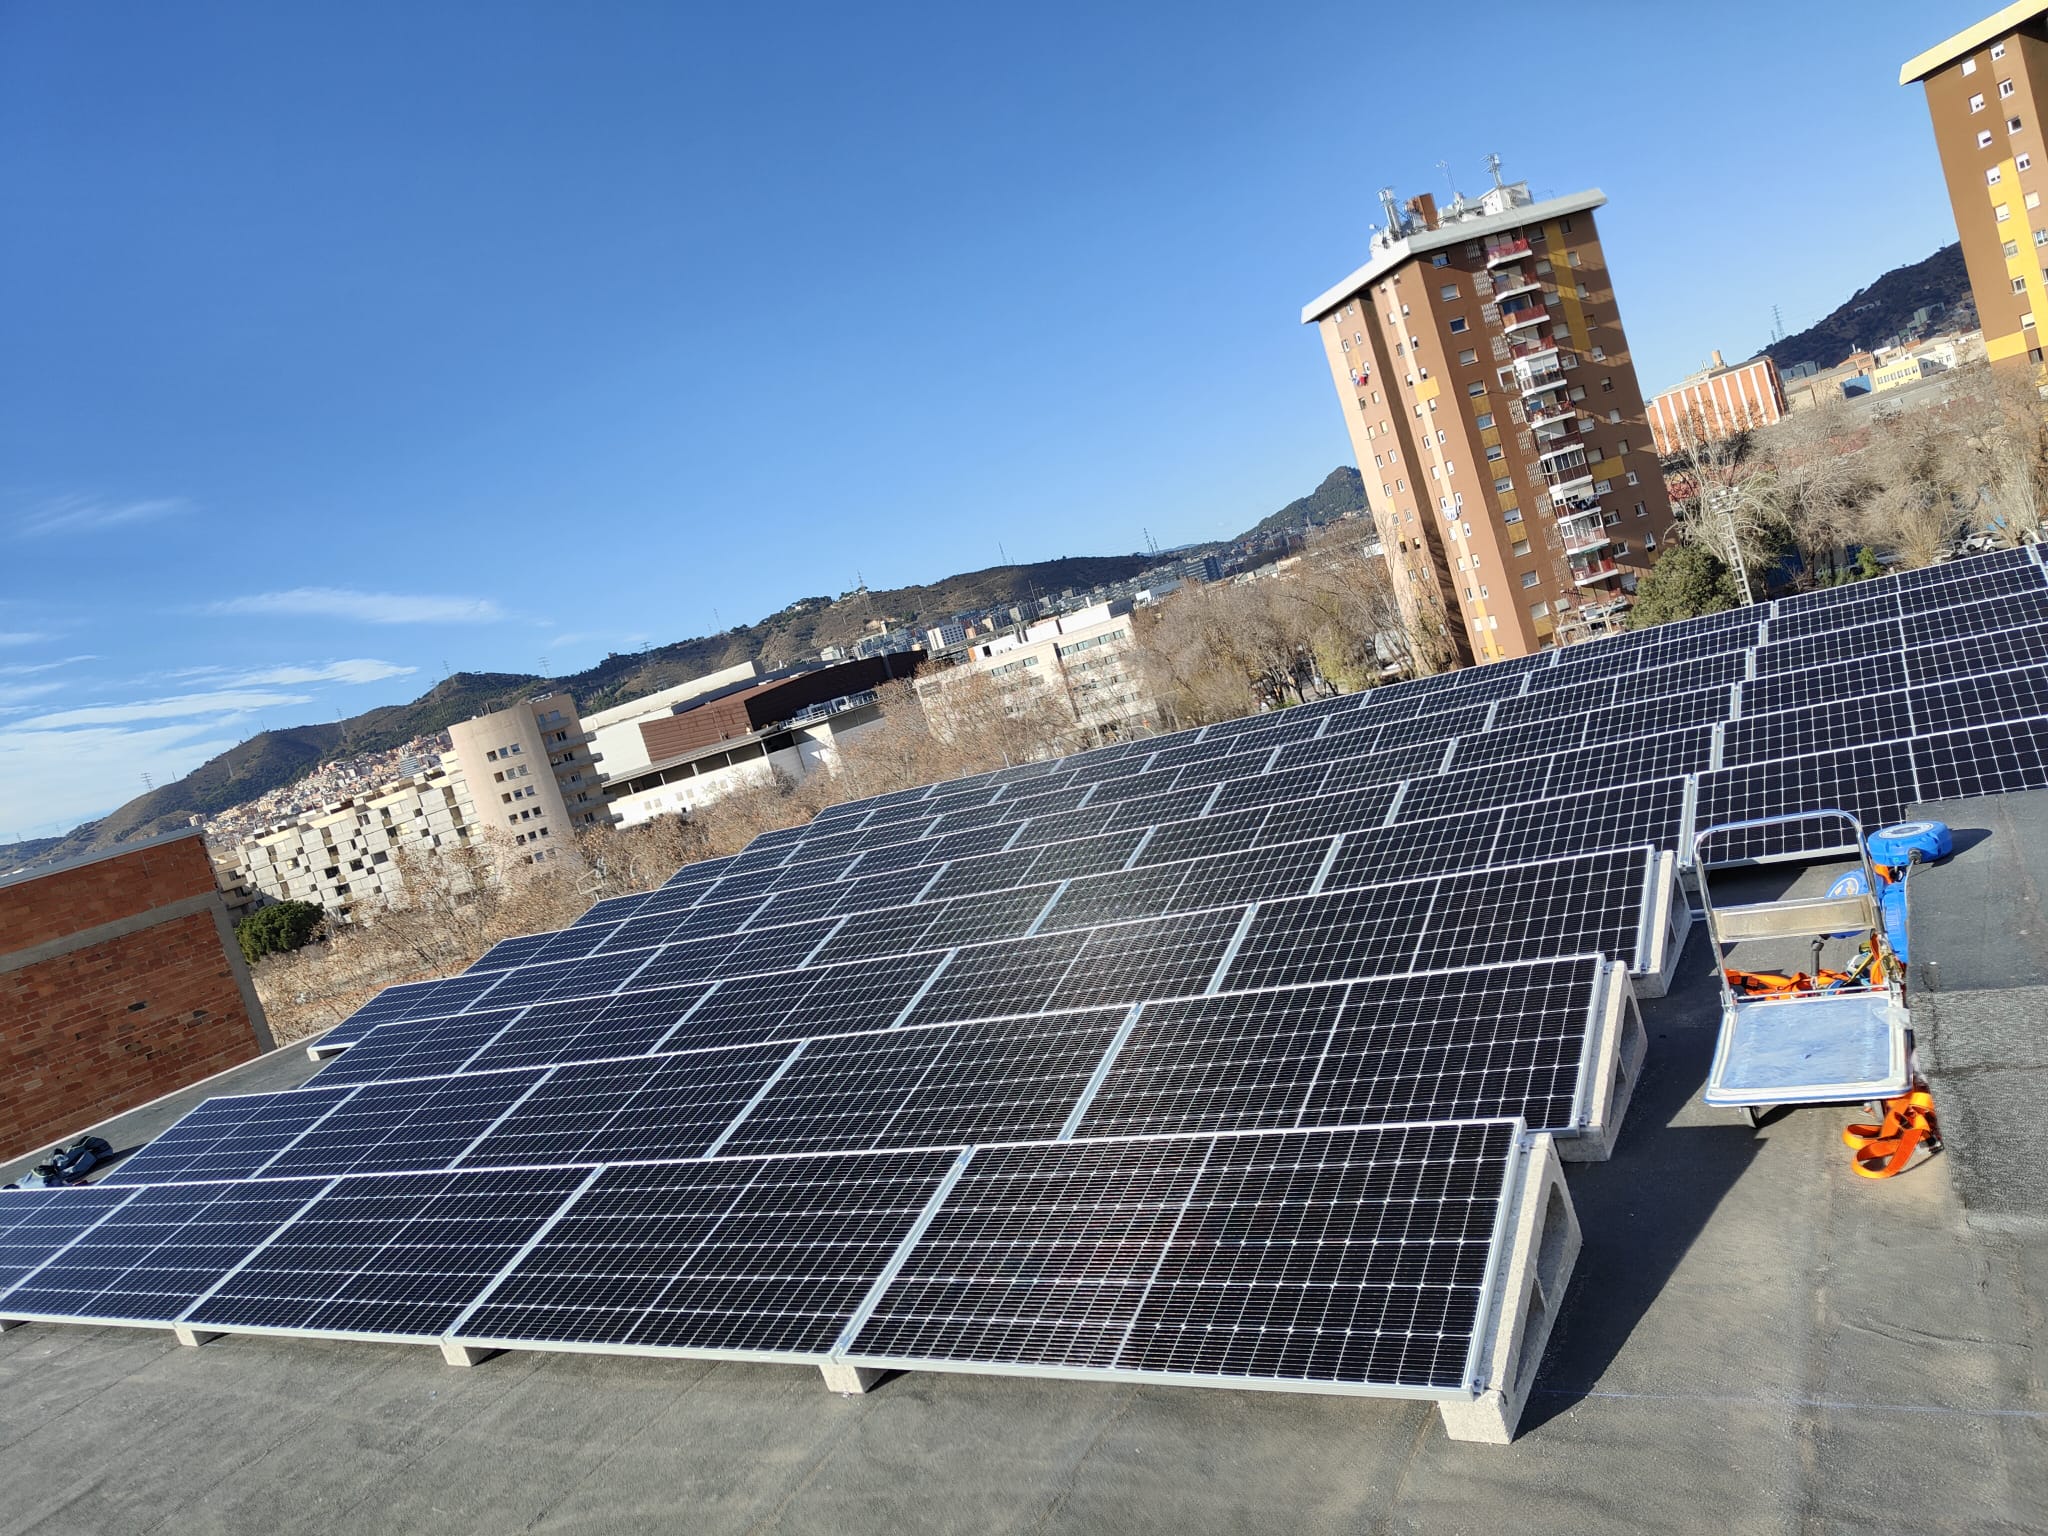 La instalación de paneles solares permite aprovechar la energía del sol y convertirla en electricidad renovable